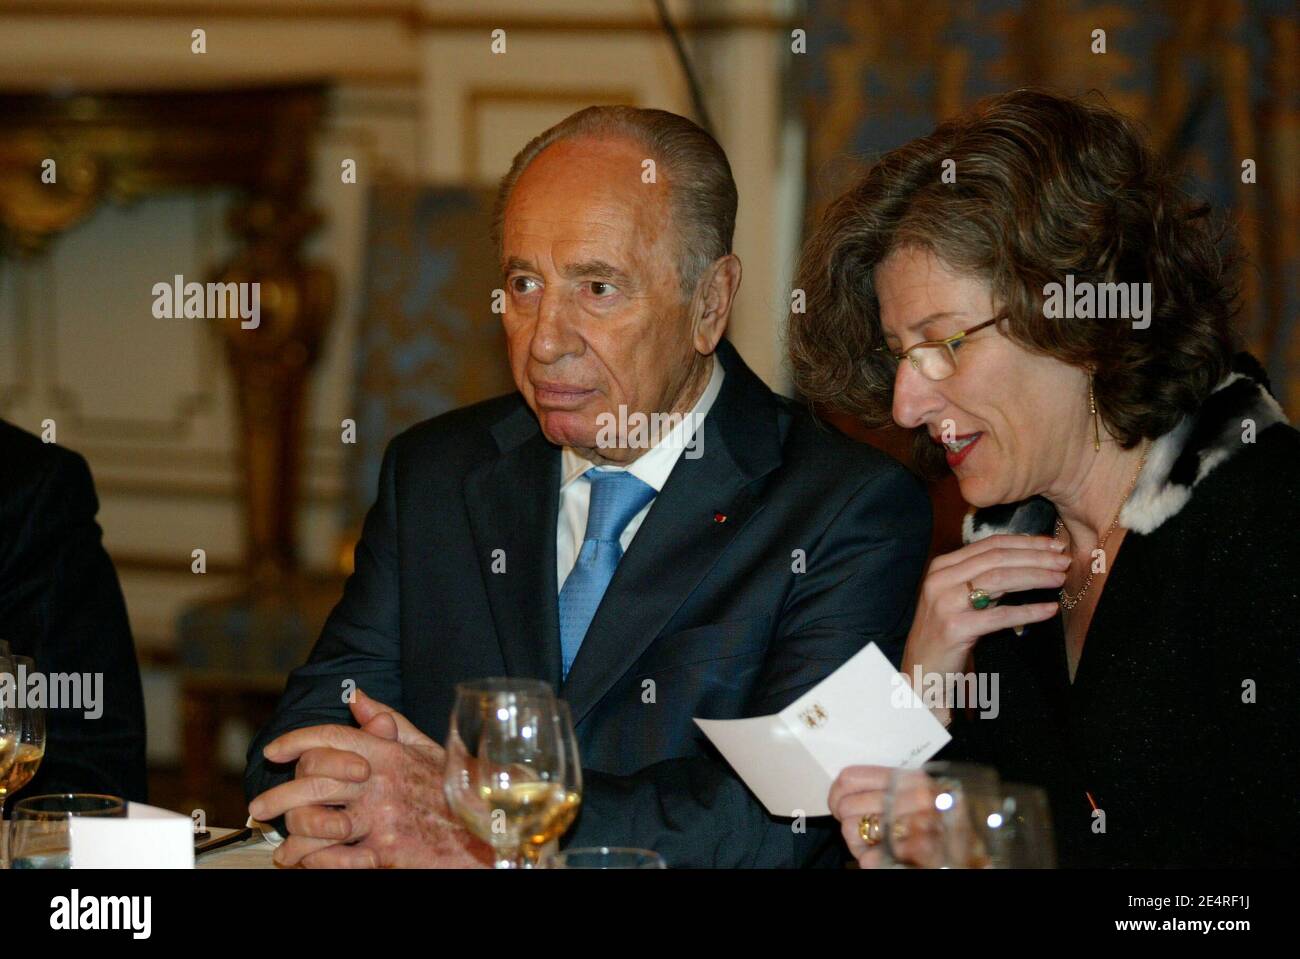 Le Président israélien Shimon Peres lors d'un déjeuner à la Préfecture de Lyon, France, le 12 mars 2008. Photo de Pascal Fayolle/Pool/ABACAPRESS.COM Banque D'Images